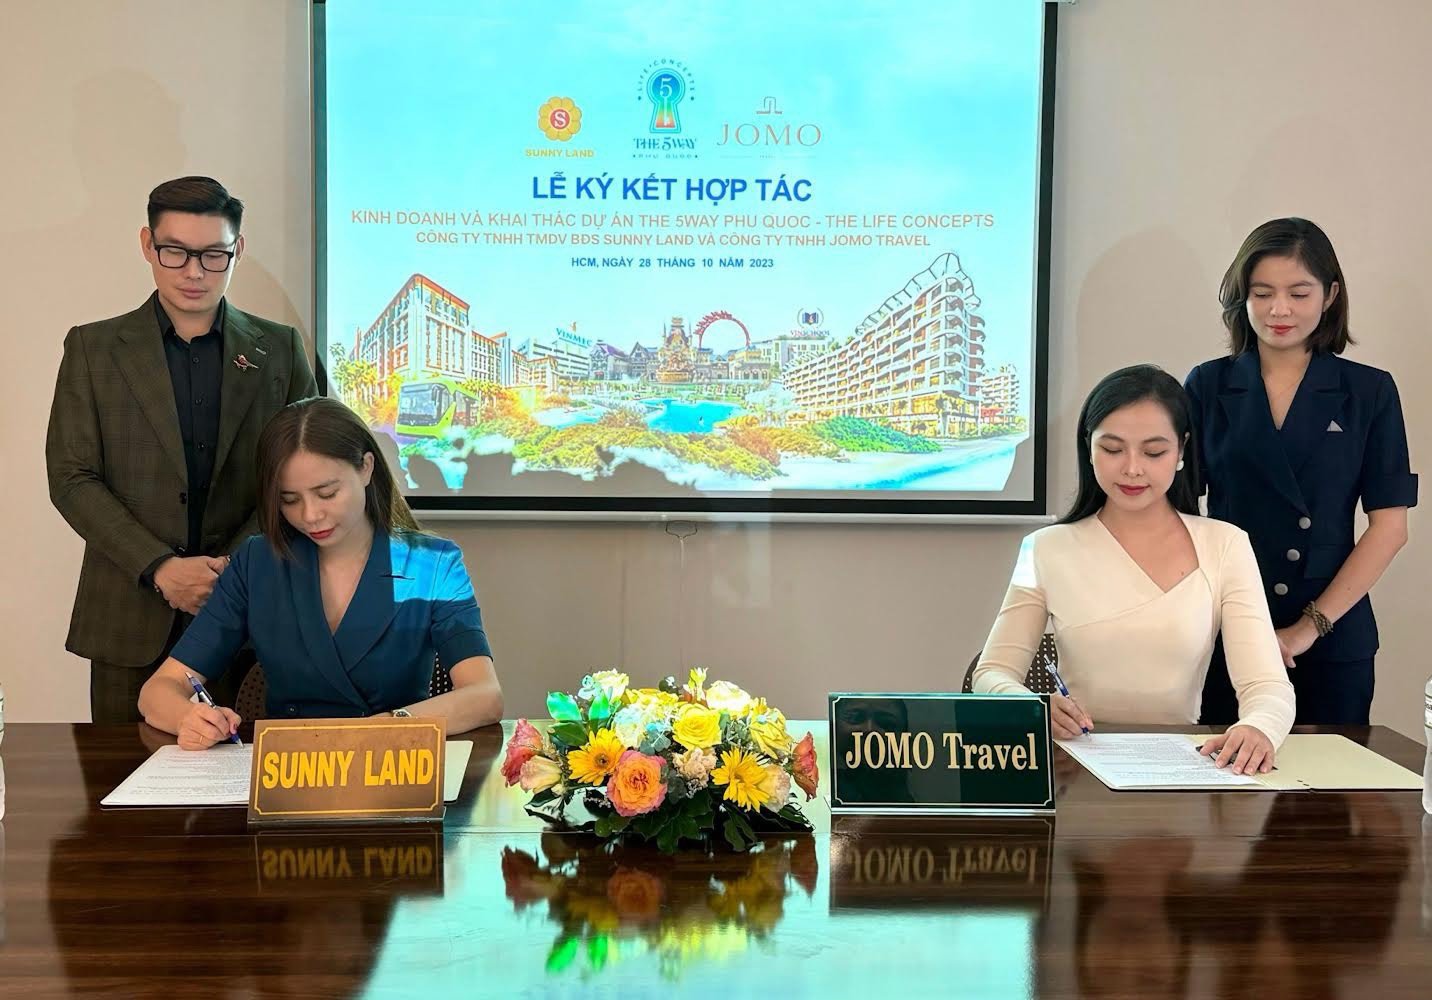 Hợp tác khai thác, vận hành căn hộ biển The 5Way Phu Quoc - The Life Concepts giữa Sunny Land và Jomo Travel - 2